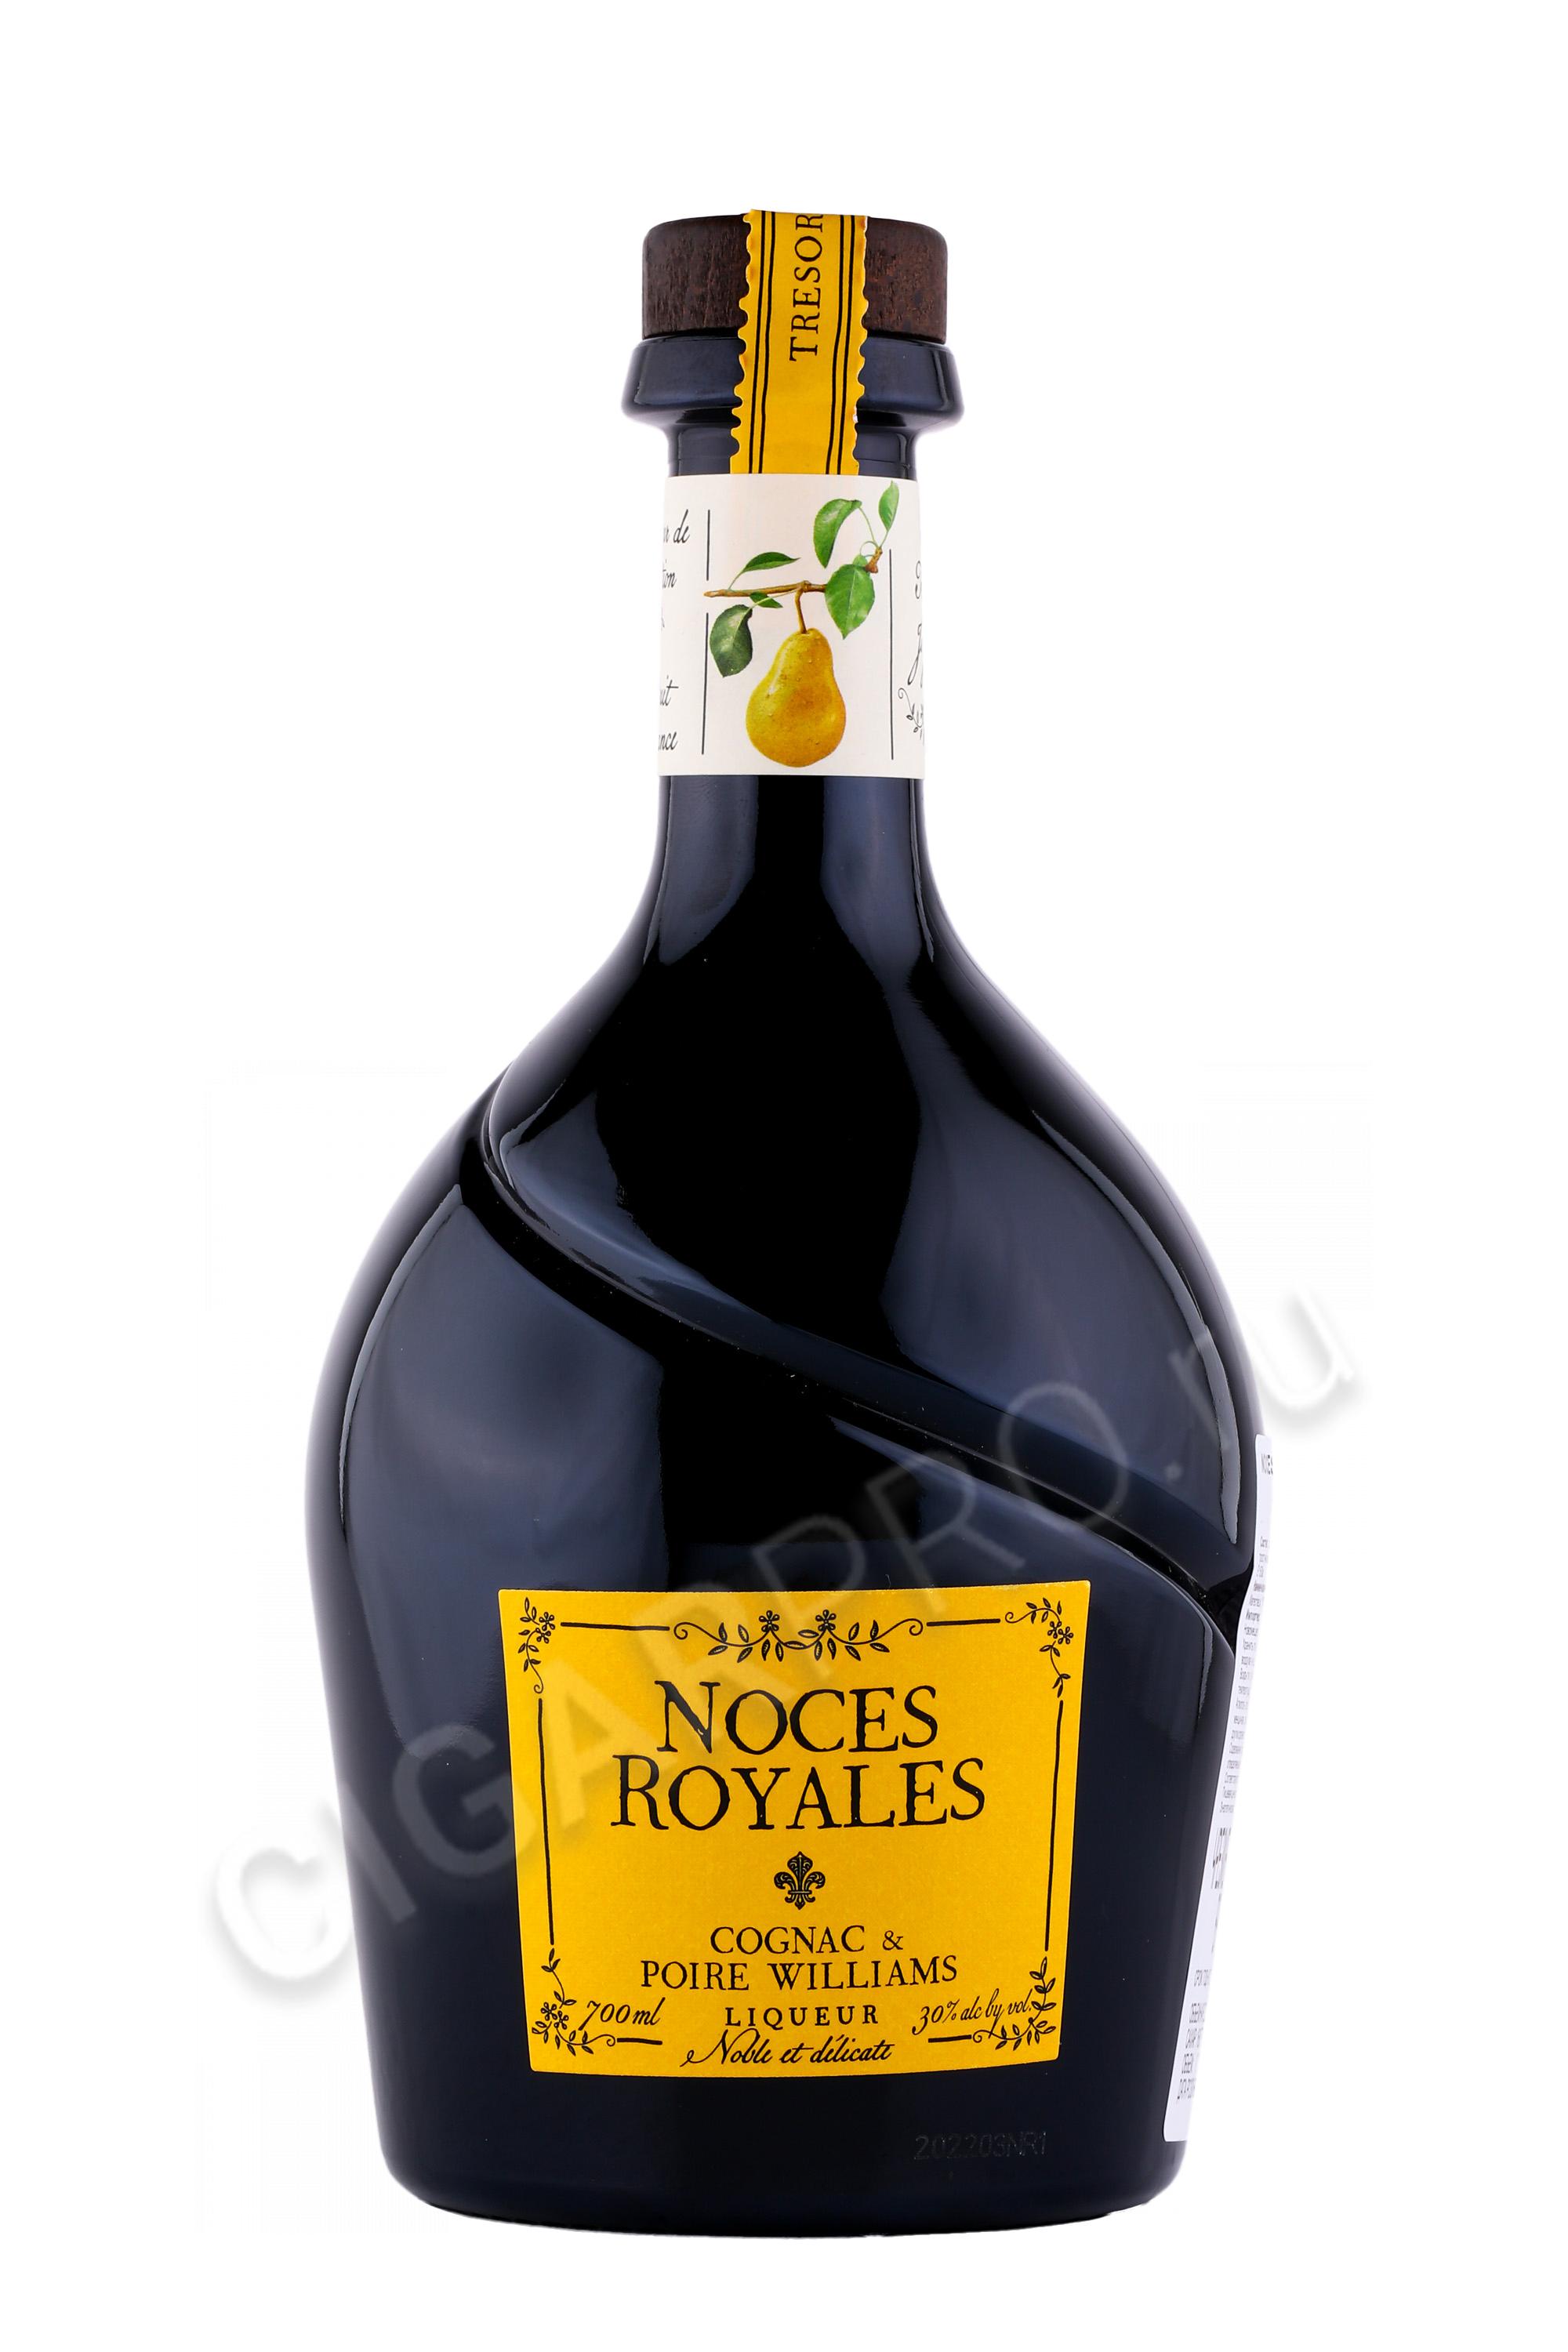 Ликер Noces Рояль и Груша цена Williams ликер Poire Cognac 0.7 Нос л Royales купить Liqueur, - Вильямс Коньяк